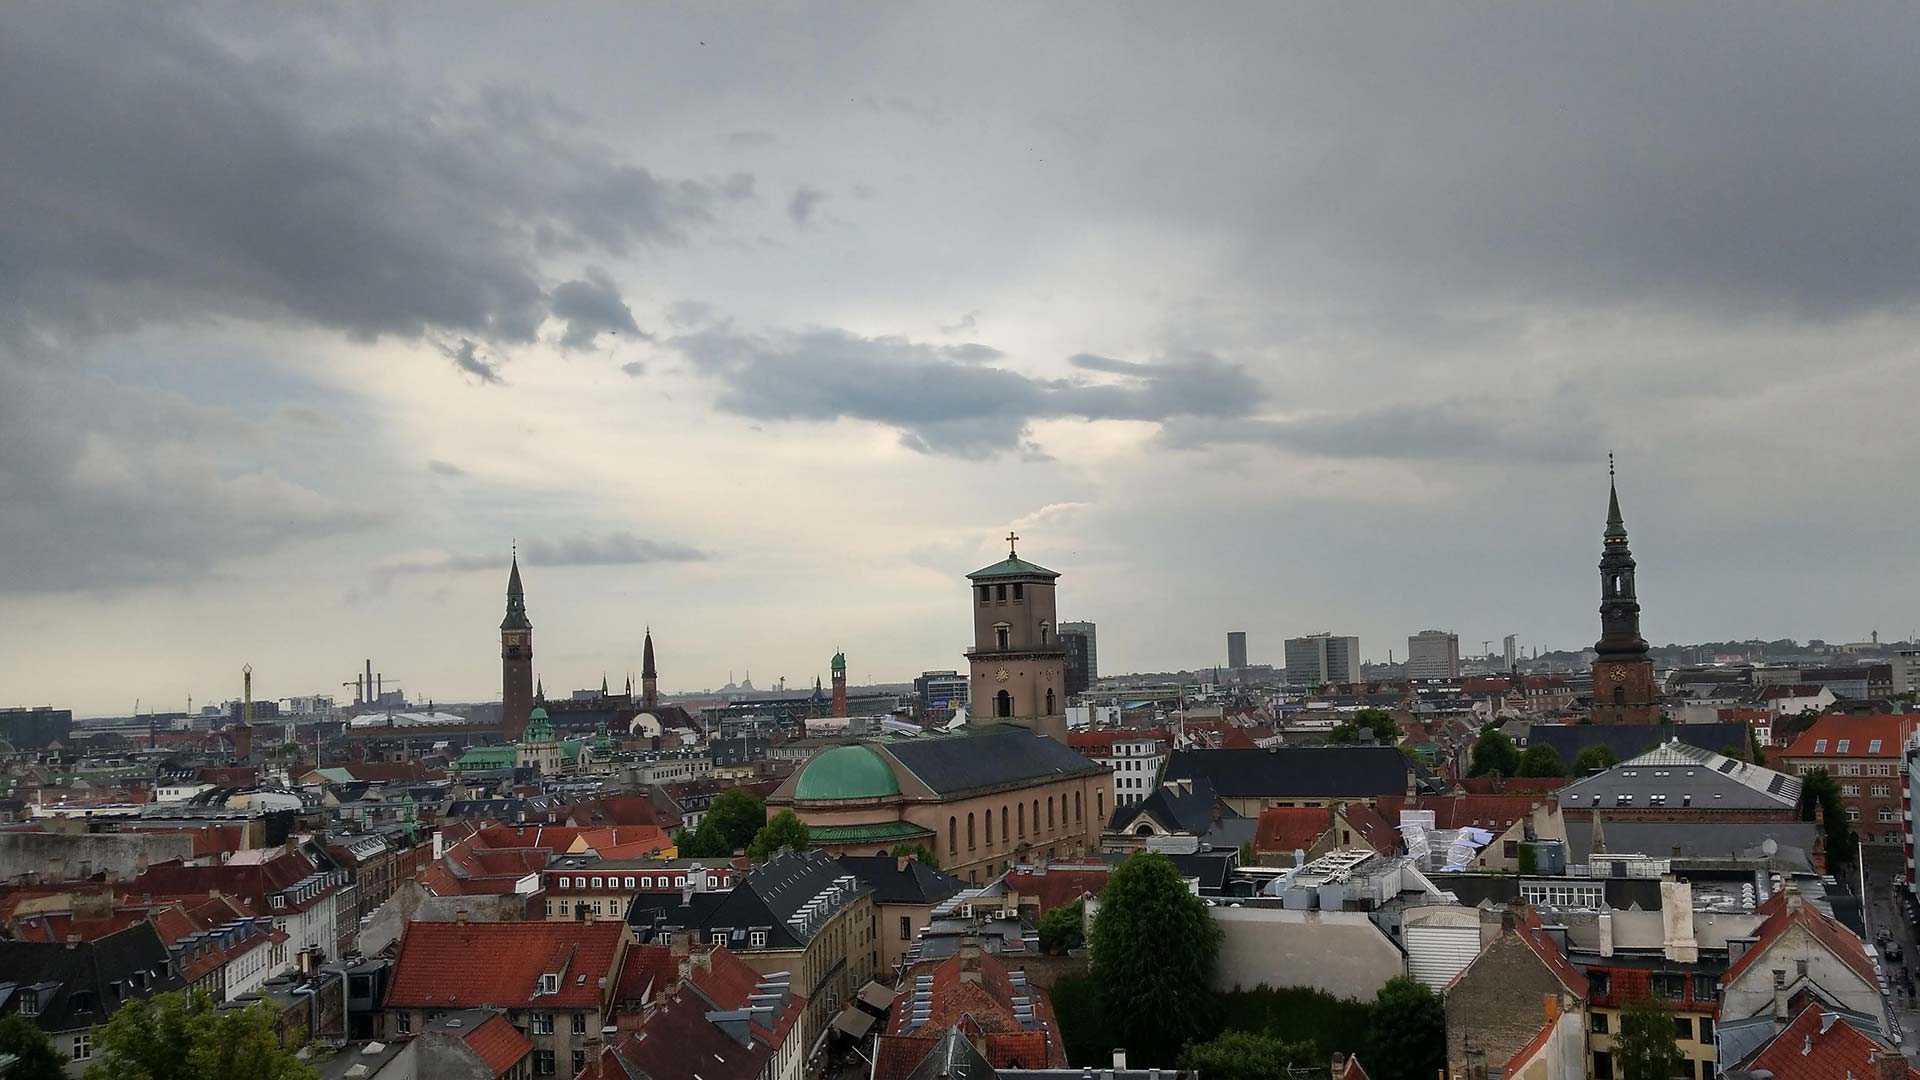 View of Copenhagen, Denmark buildings.